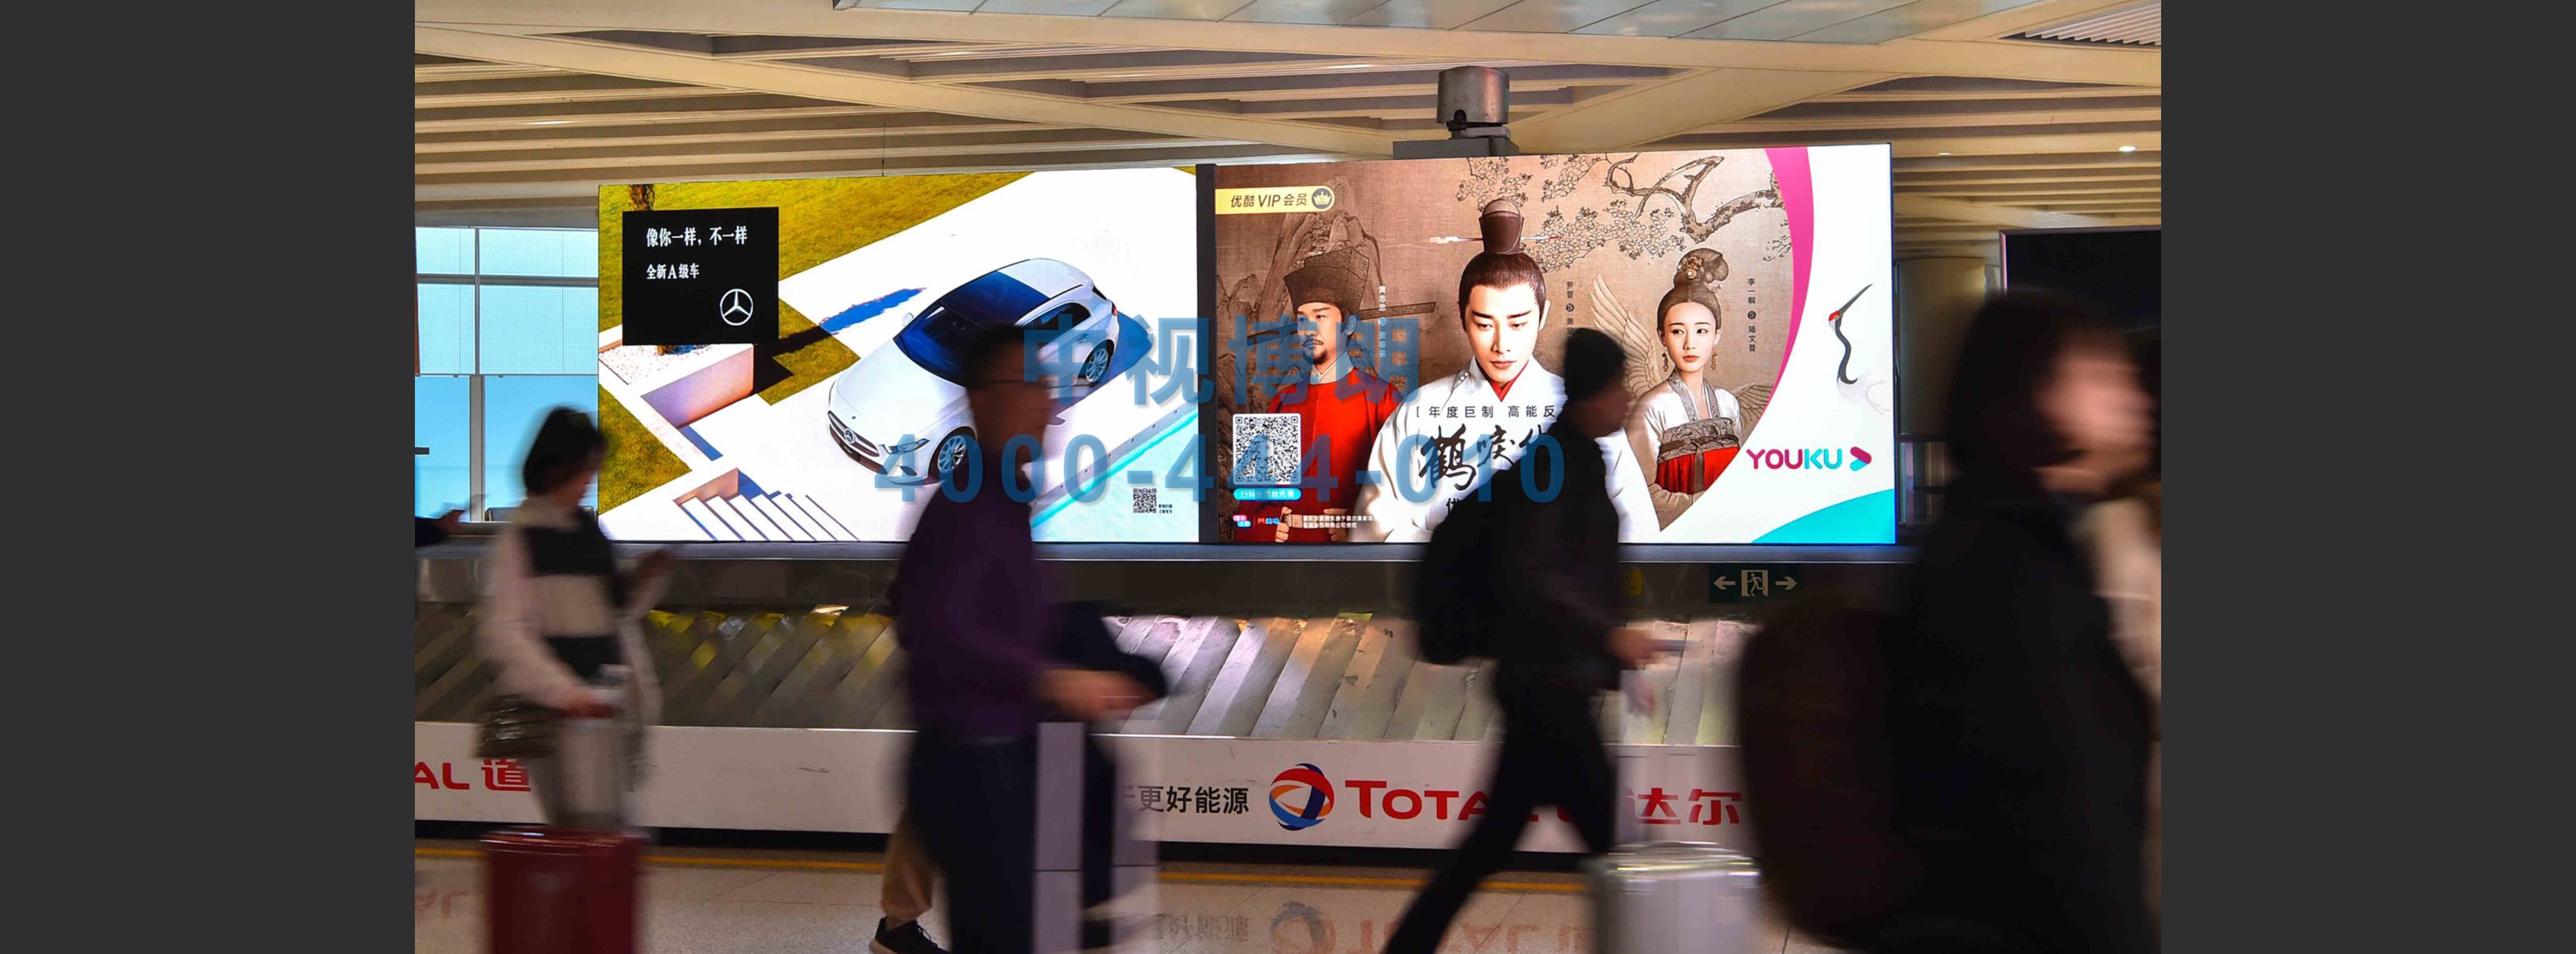 北京首都机场广告-T3到达行李厅刷屏